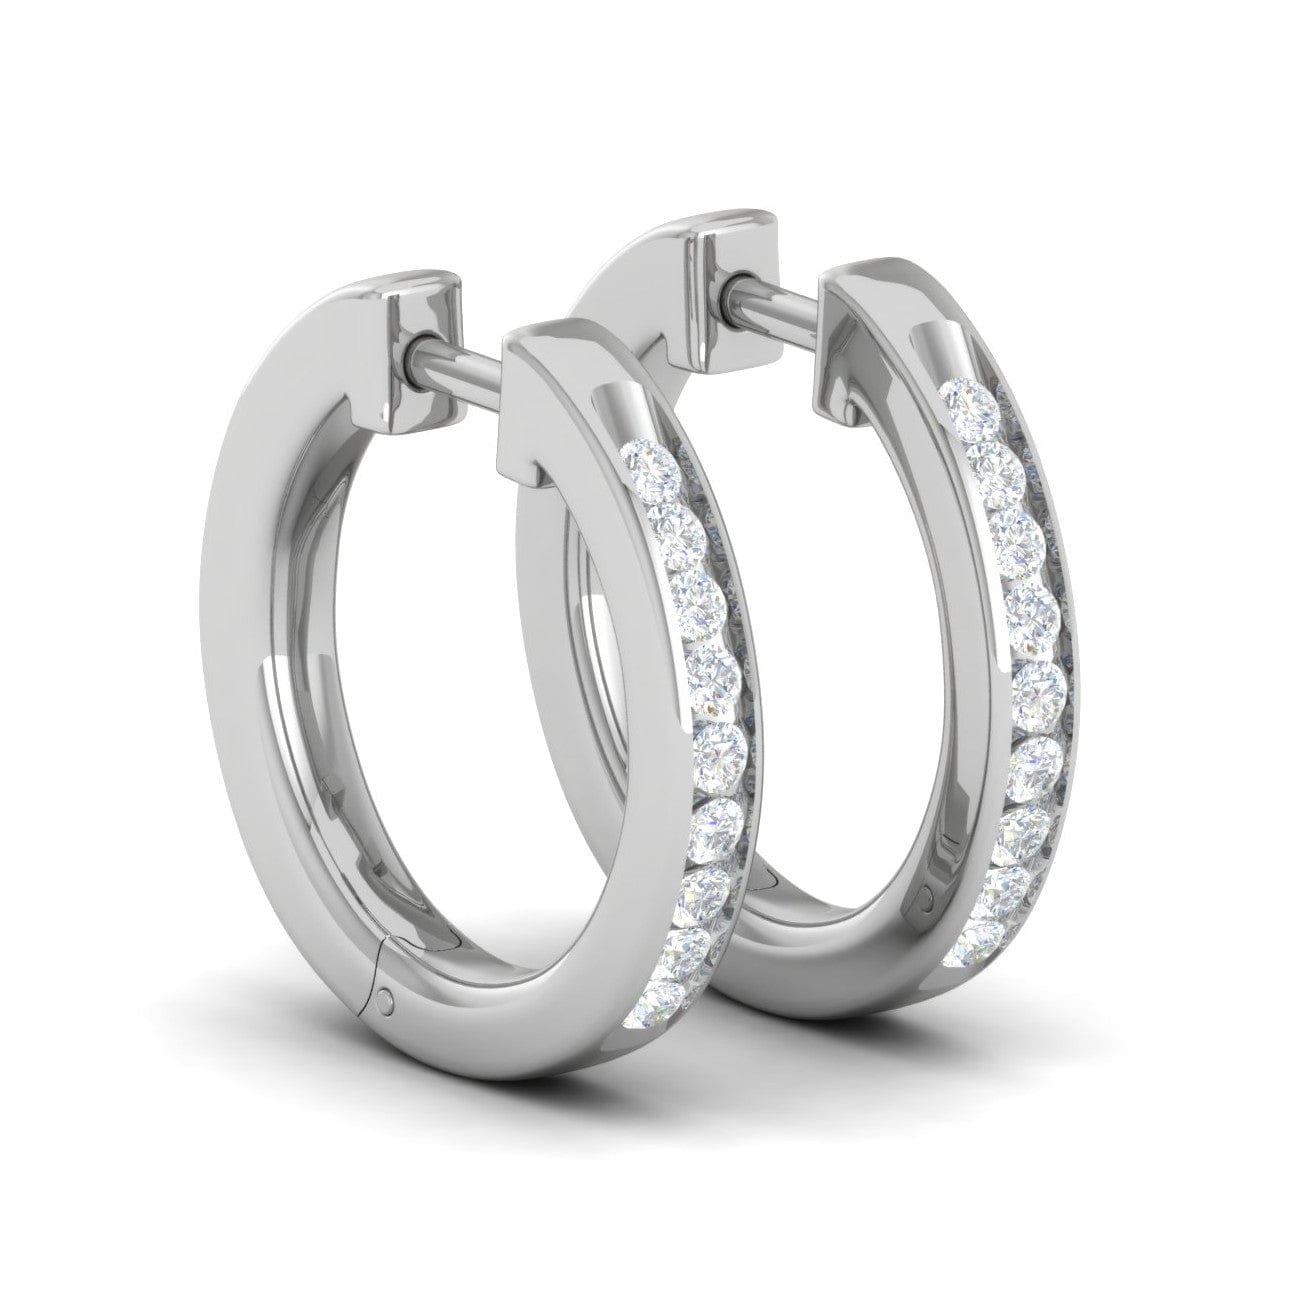 Diamond Earrings in 18K Gold - Solitaire Jewels Dubai, UAE